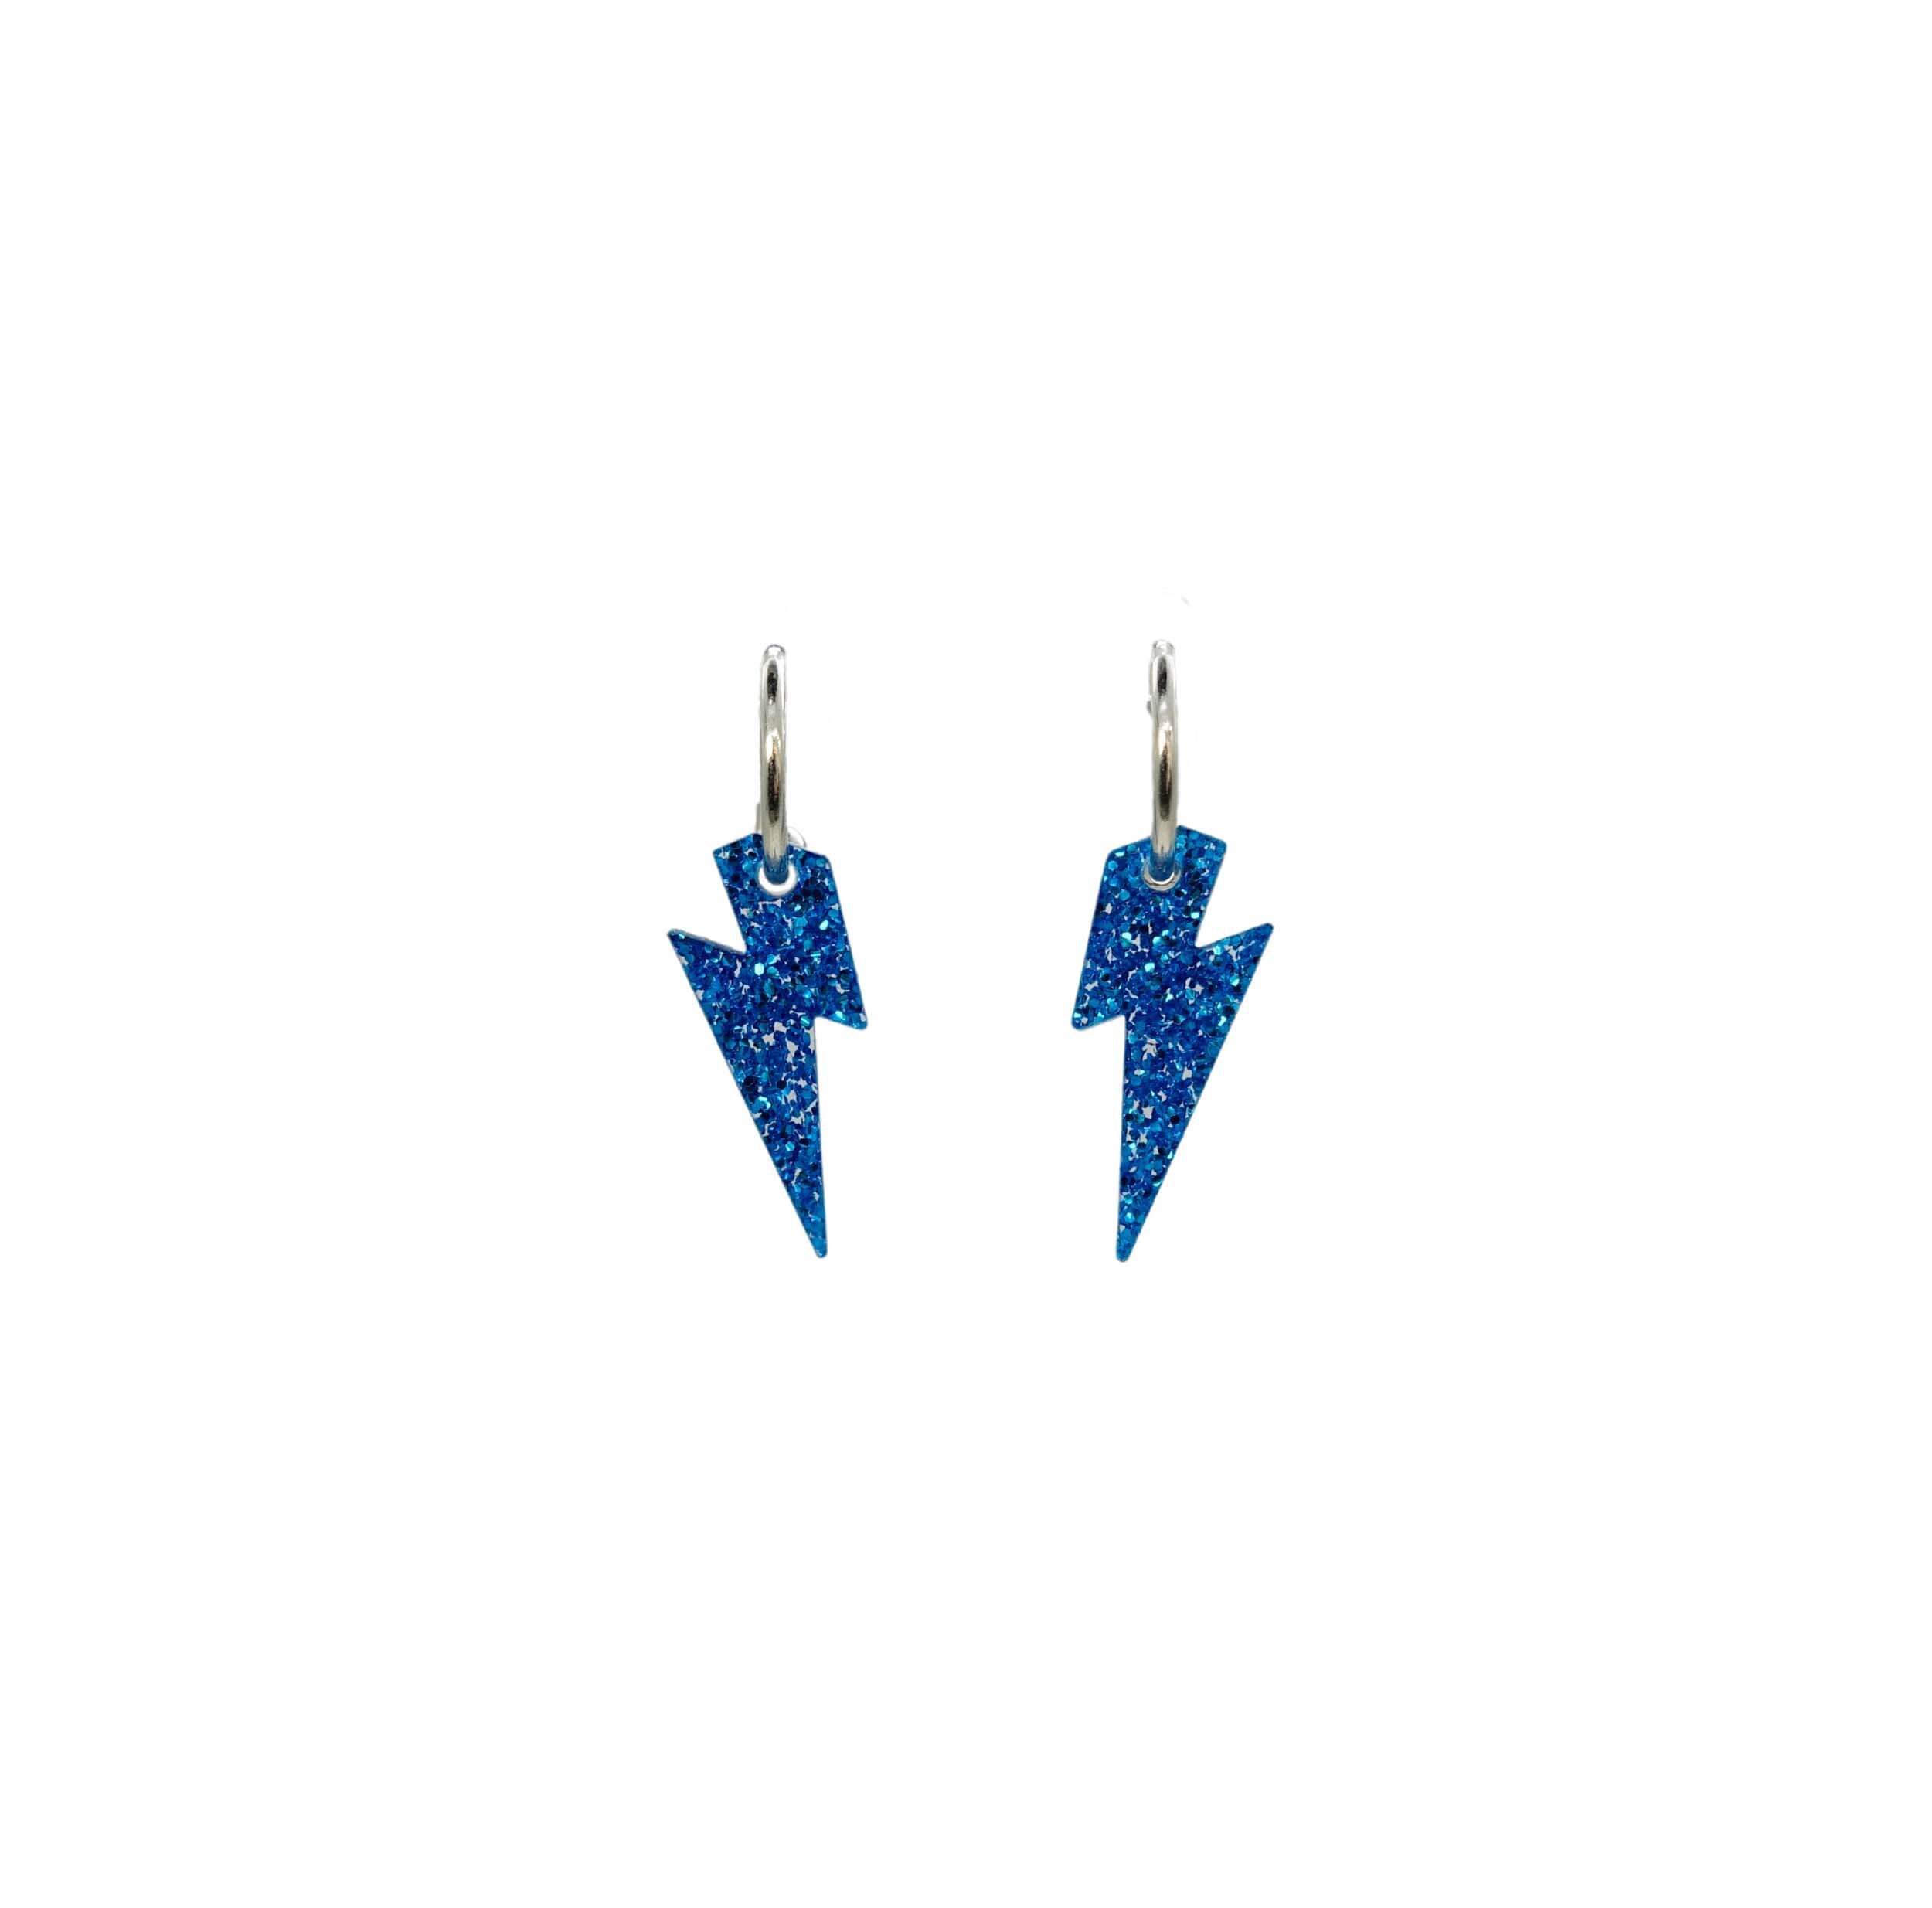 Lightning bolt hoop earrings in blue glitter. 